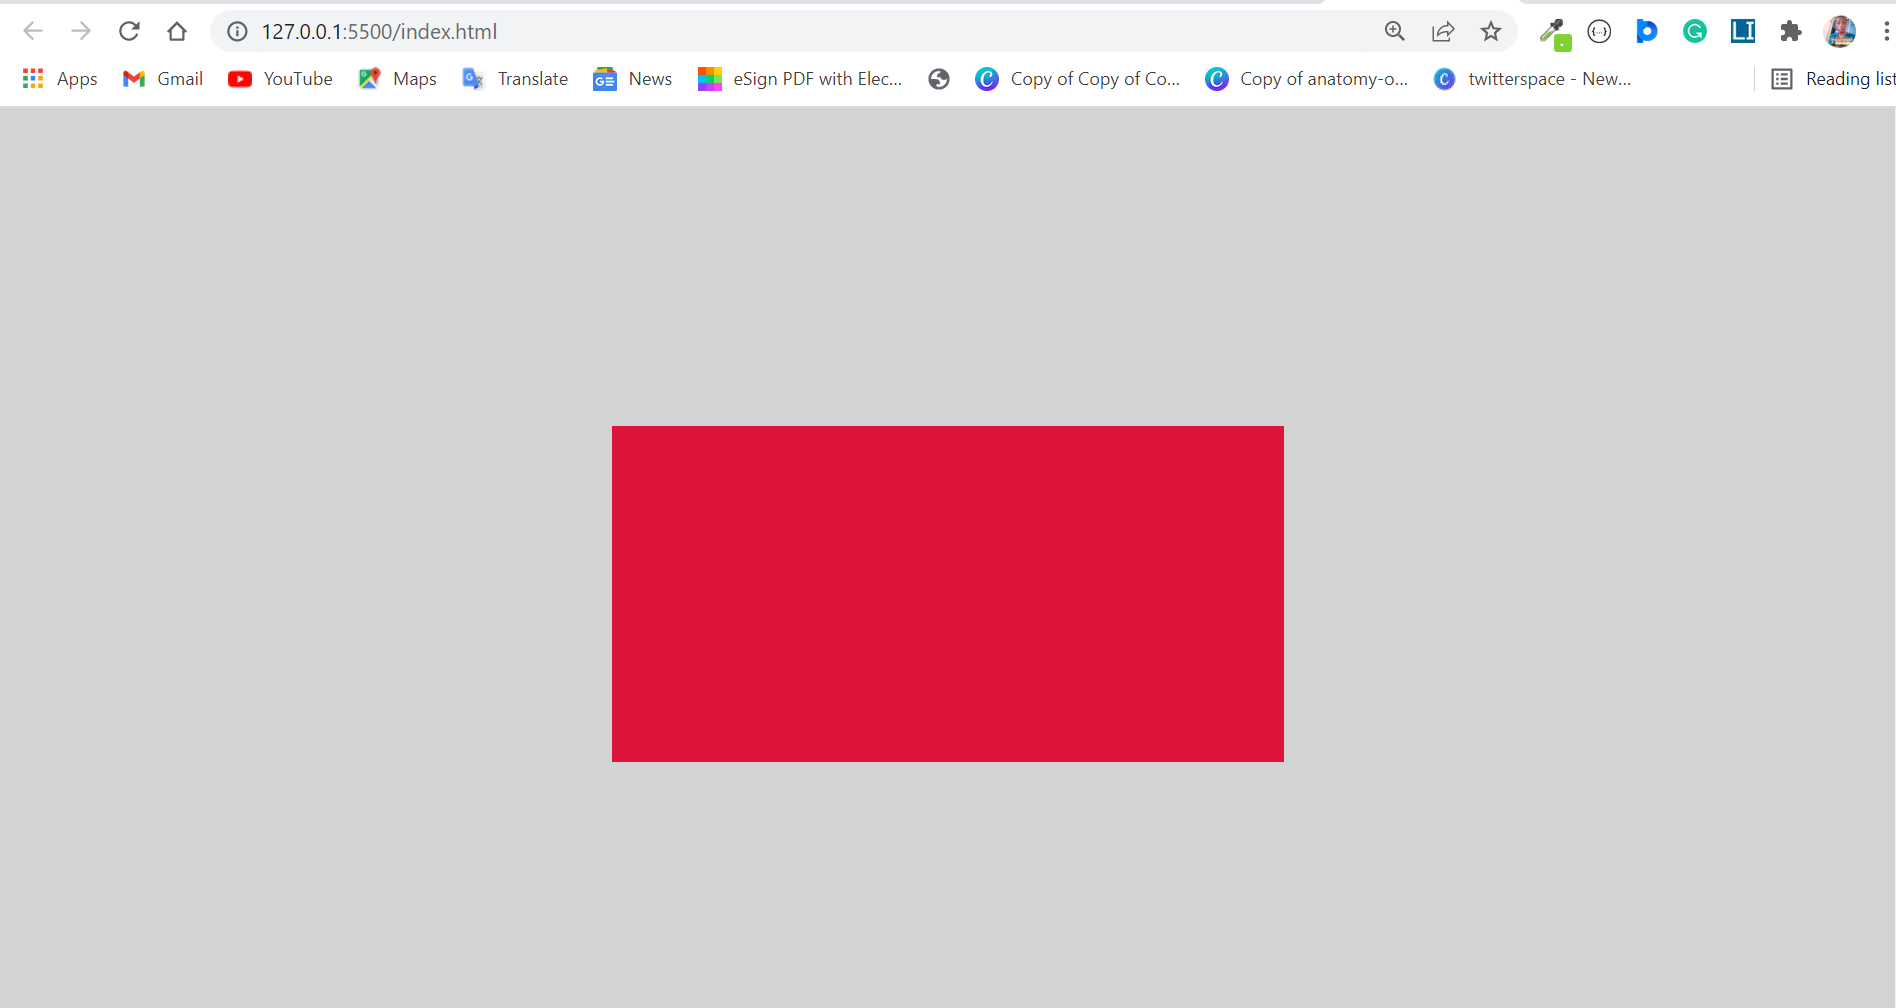 Màu nền của div - Cách thay đổi màu nền trong CSS: Màu sắc là một phần quan trọng của bất kỳ thiết kế web nào. Chúng tôi chia sẻ với bạn cách thay đổi màu nền trong CSS cho các phần tử div. Với tính năng độc đáo này, bạn có thể tạo trang web thật sự ấn tượng!